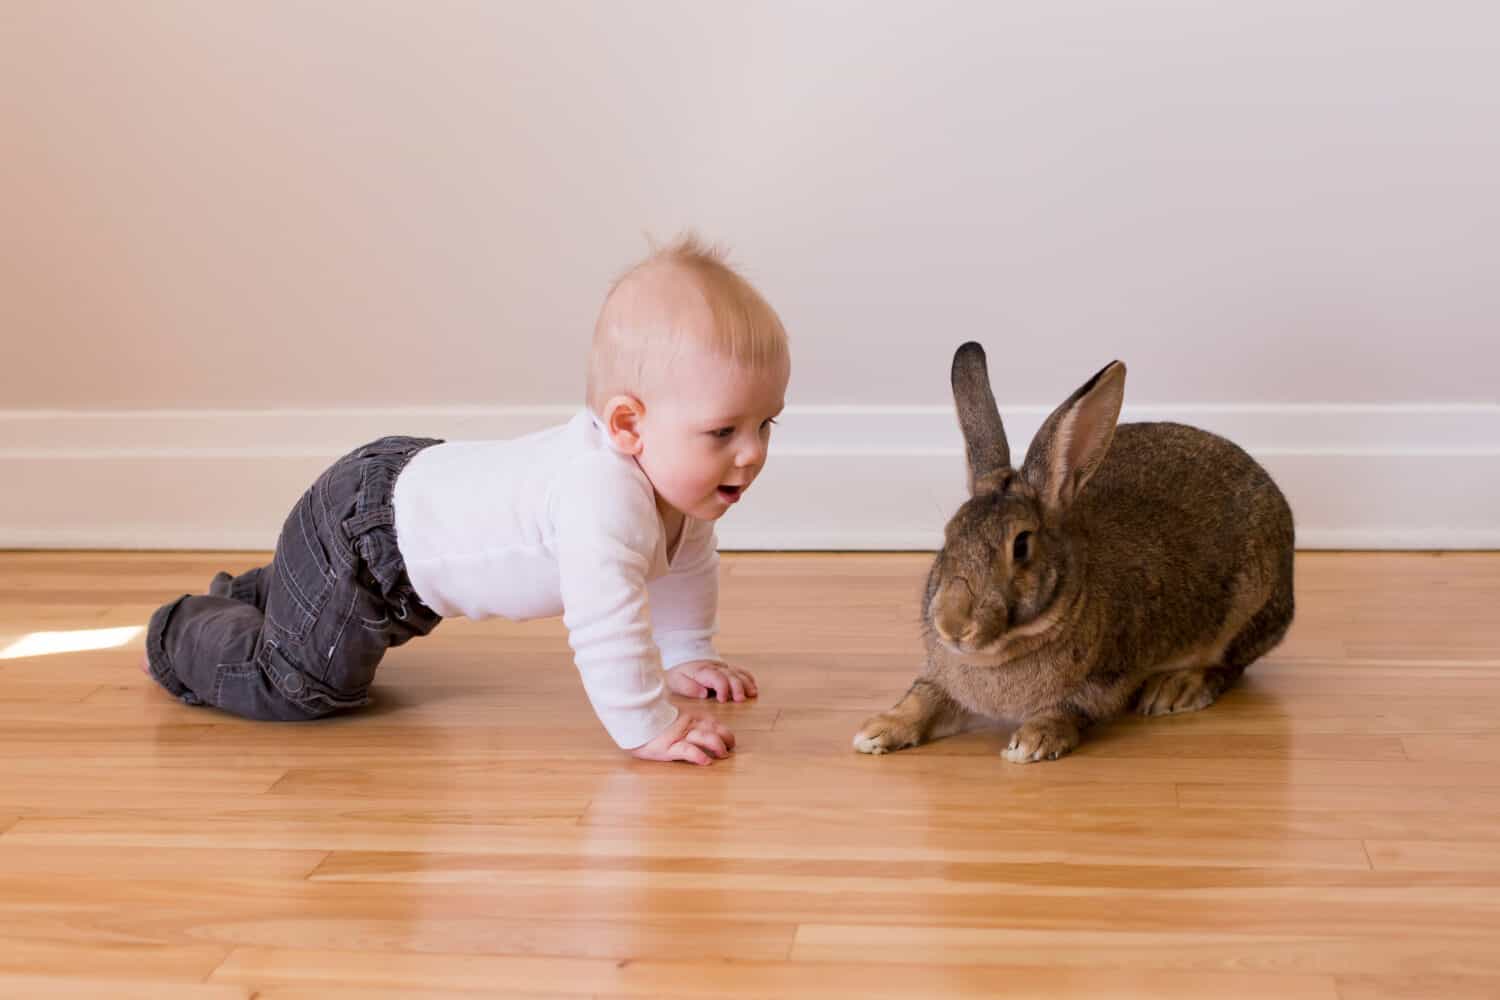 Foto orizzontale di un adorabile bambino in abiti casual che striscia verso un simpatico coniglio gigante fiammingo marrone con espressione diffidente